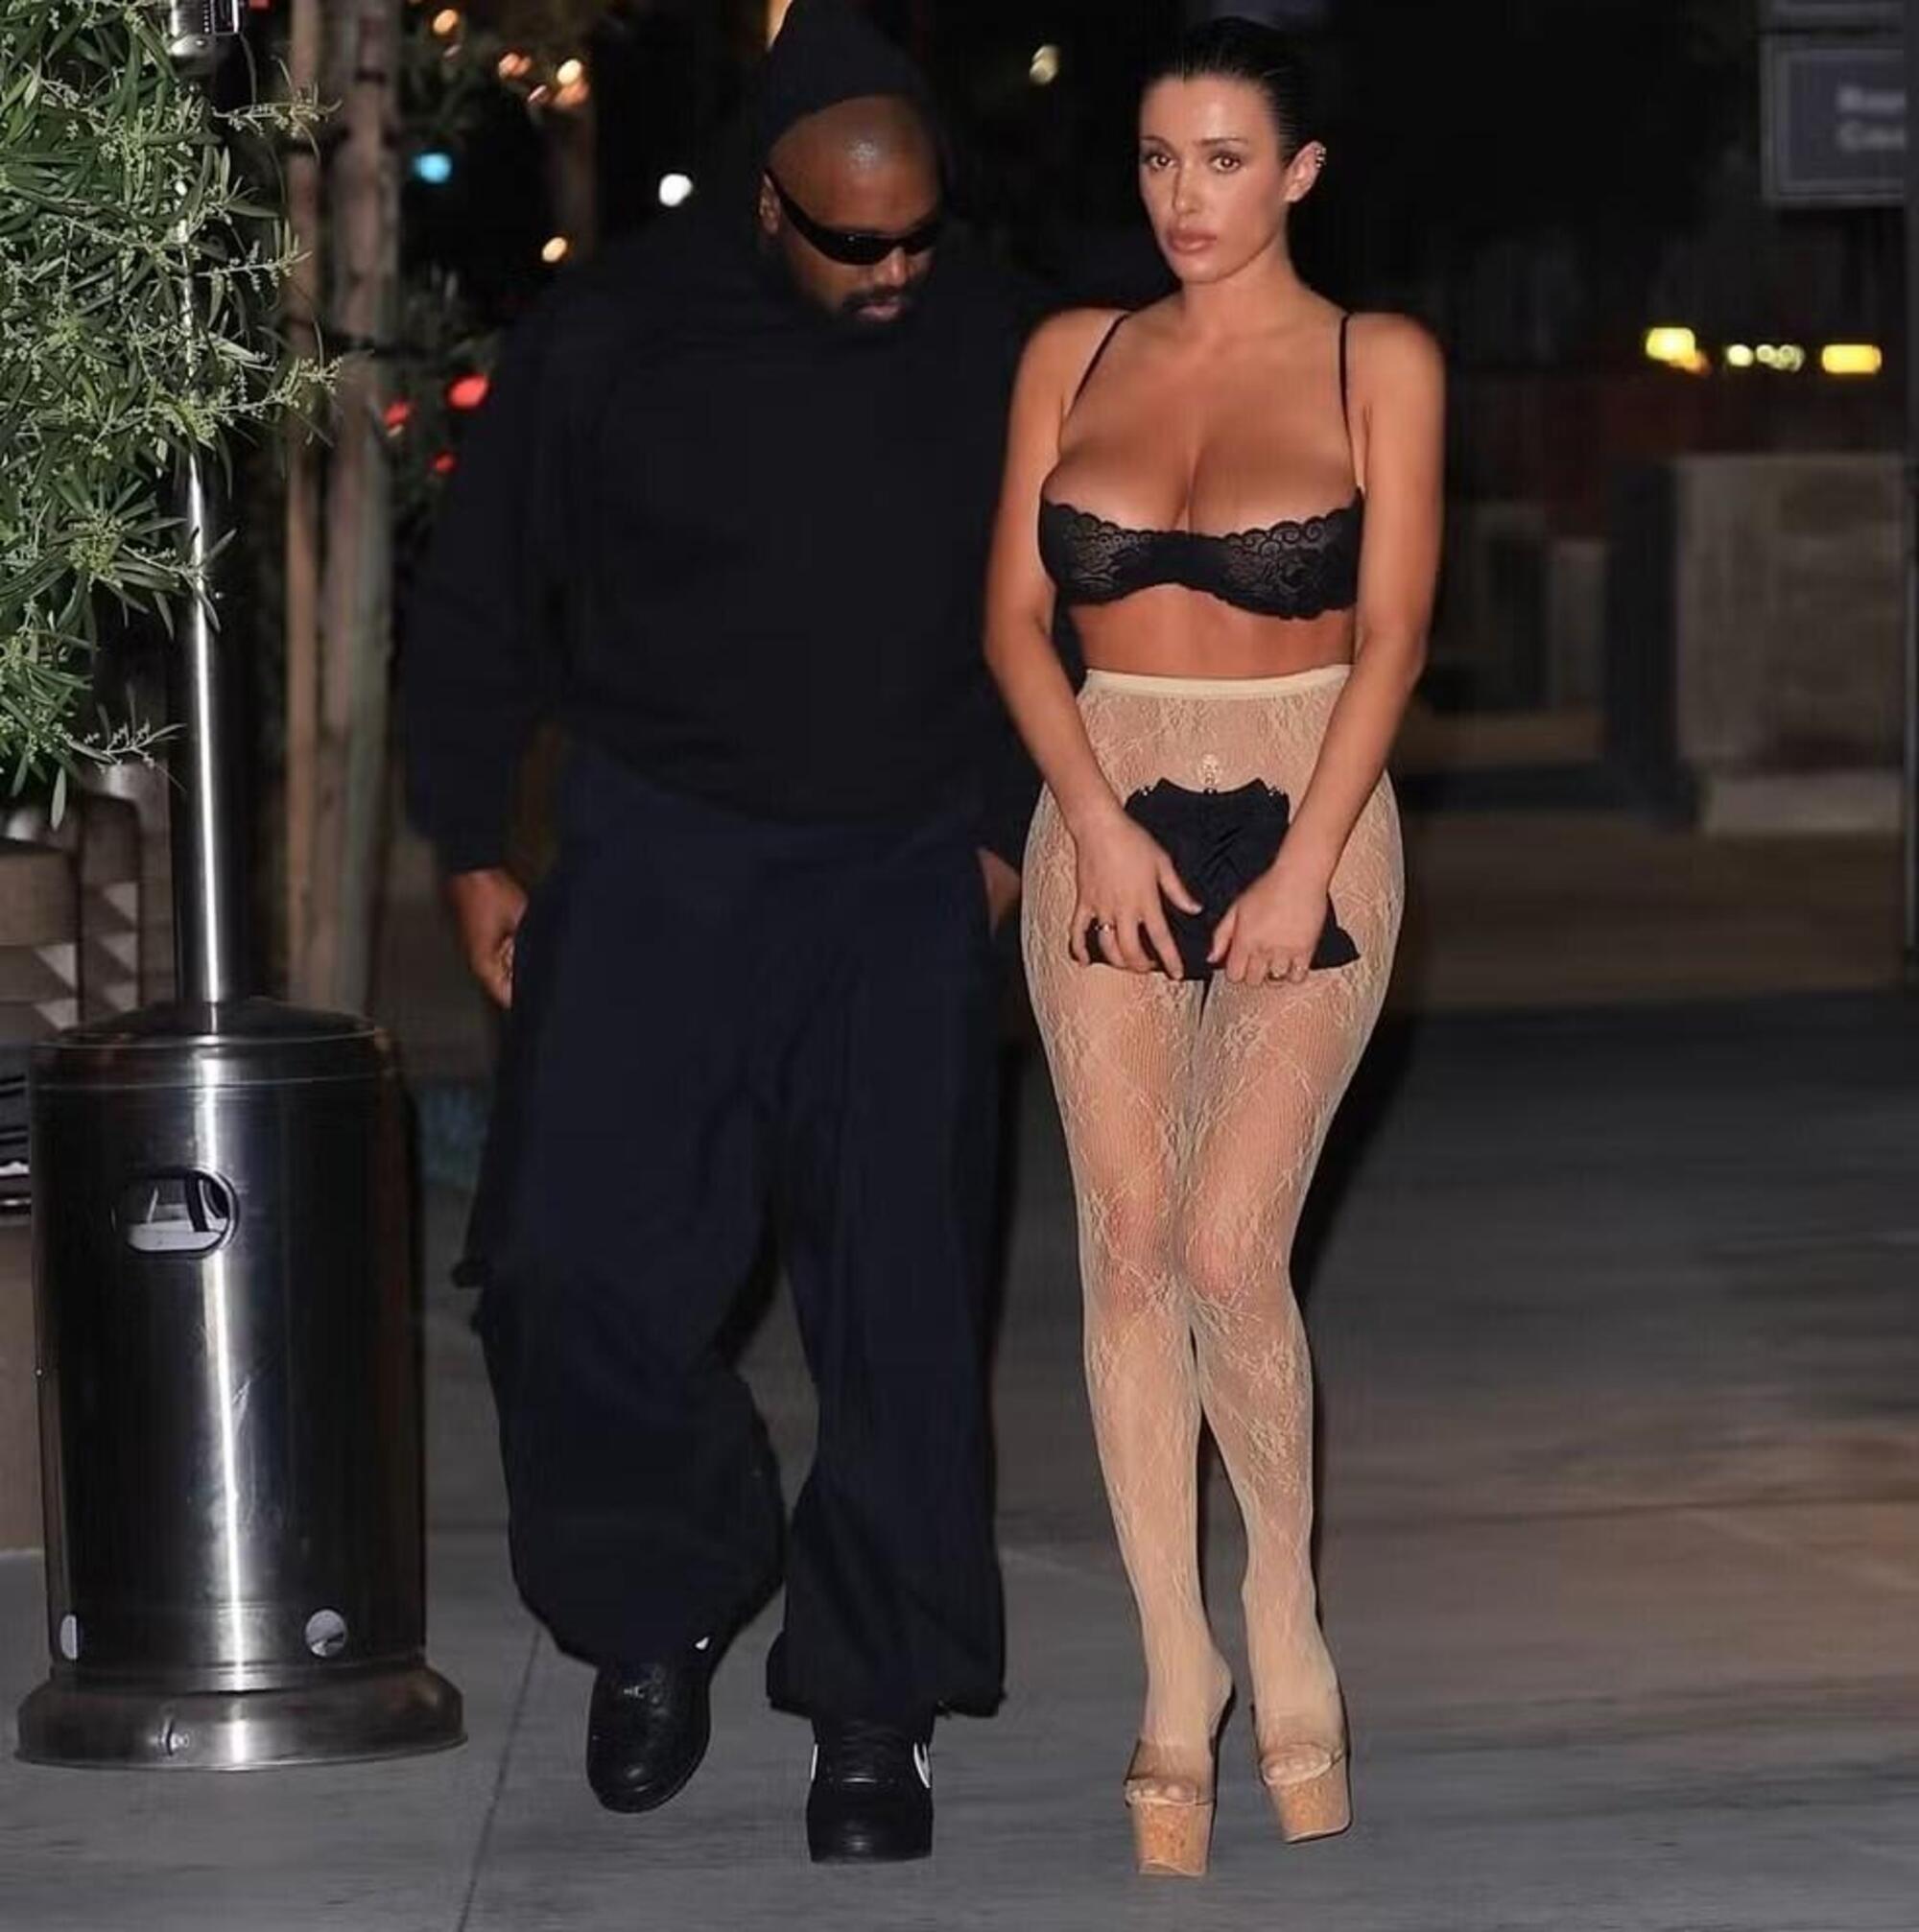 Kanye West e Bianca Censori, che indossa solo collant trasparenti e reggiseno